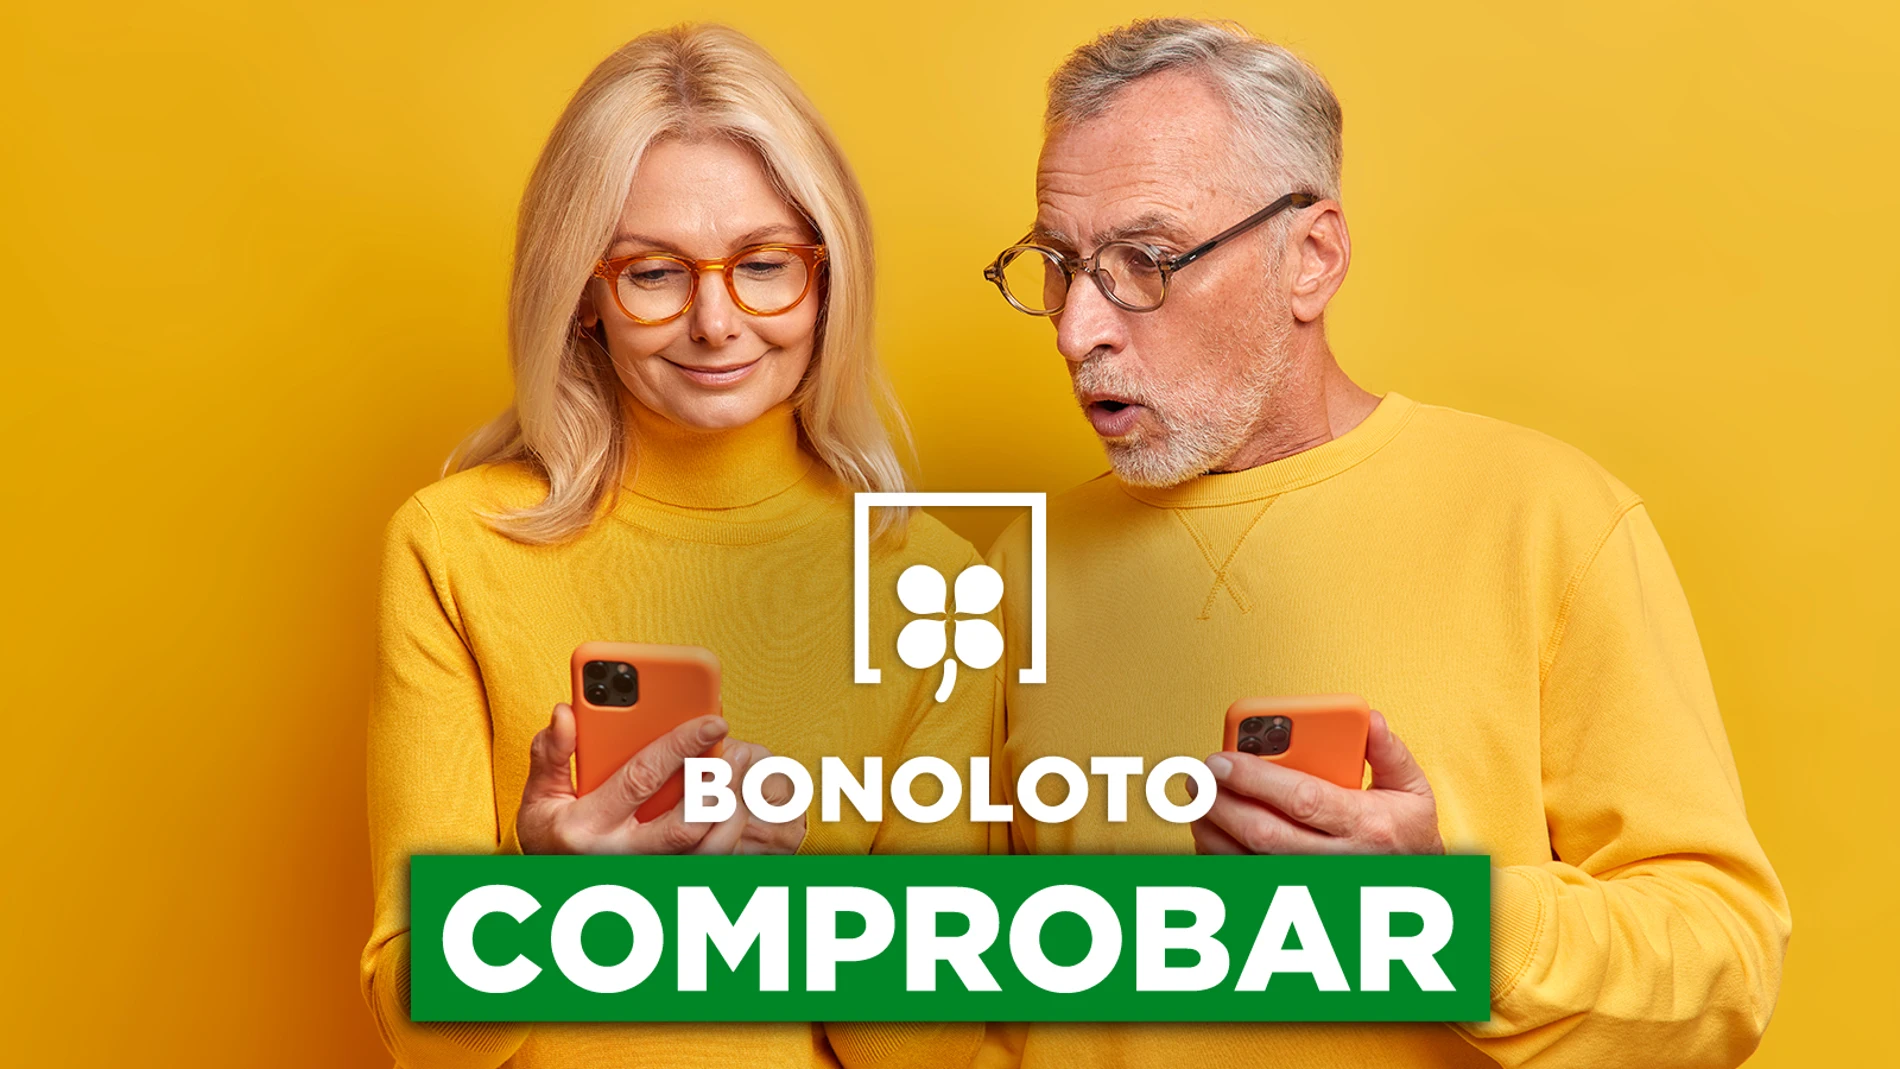 Bonoloto: comprobar hoy, viernes 9 de septiembre de 2022